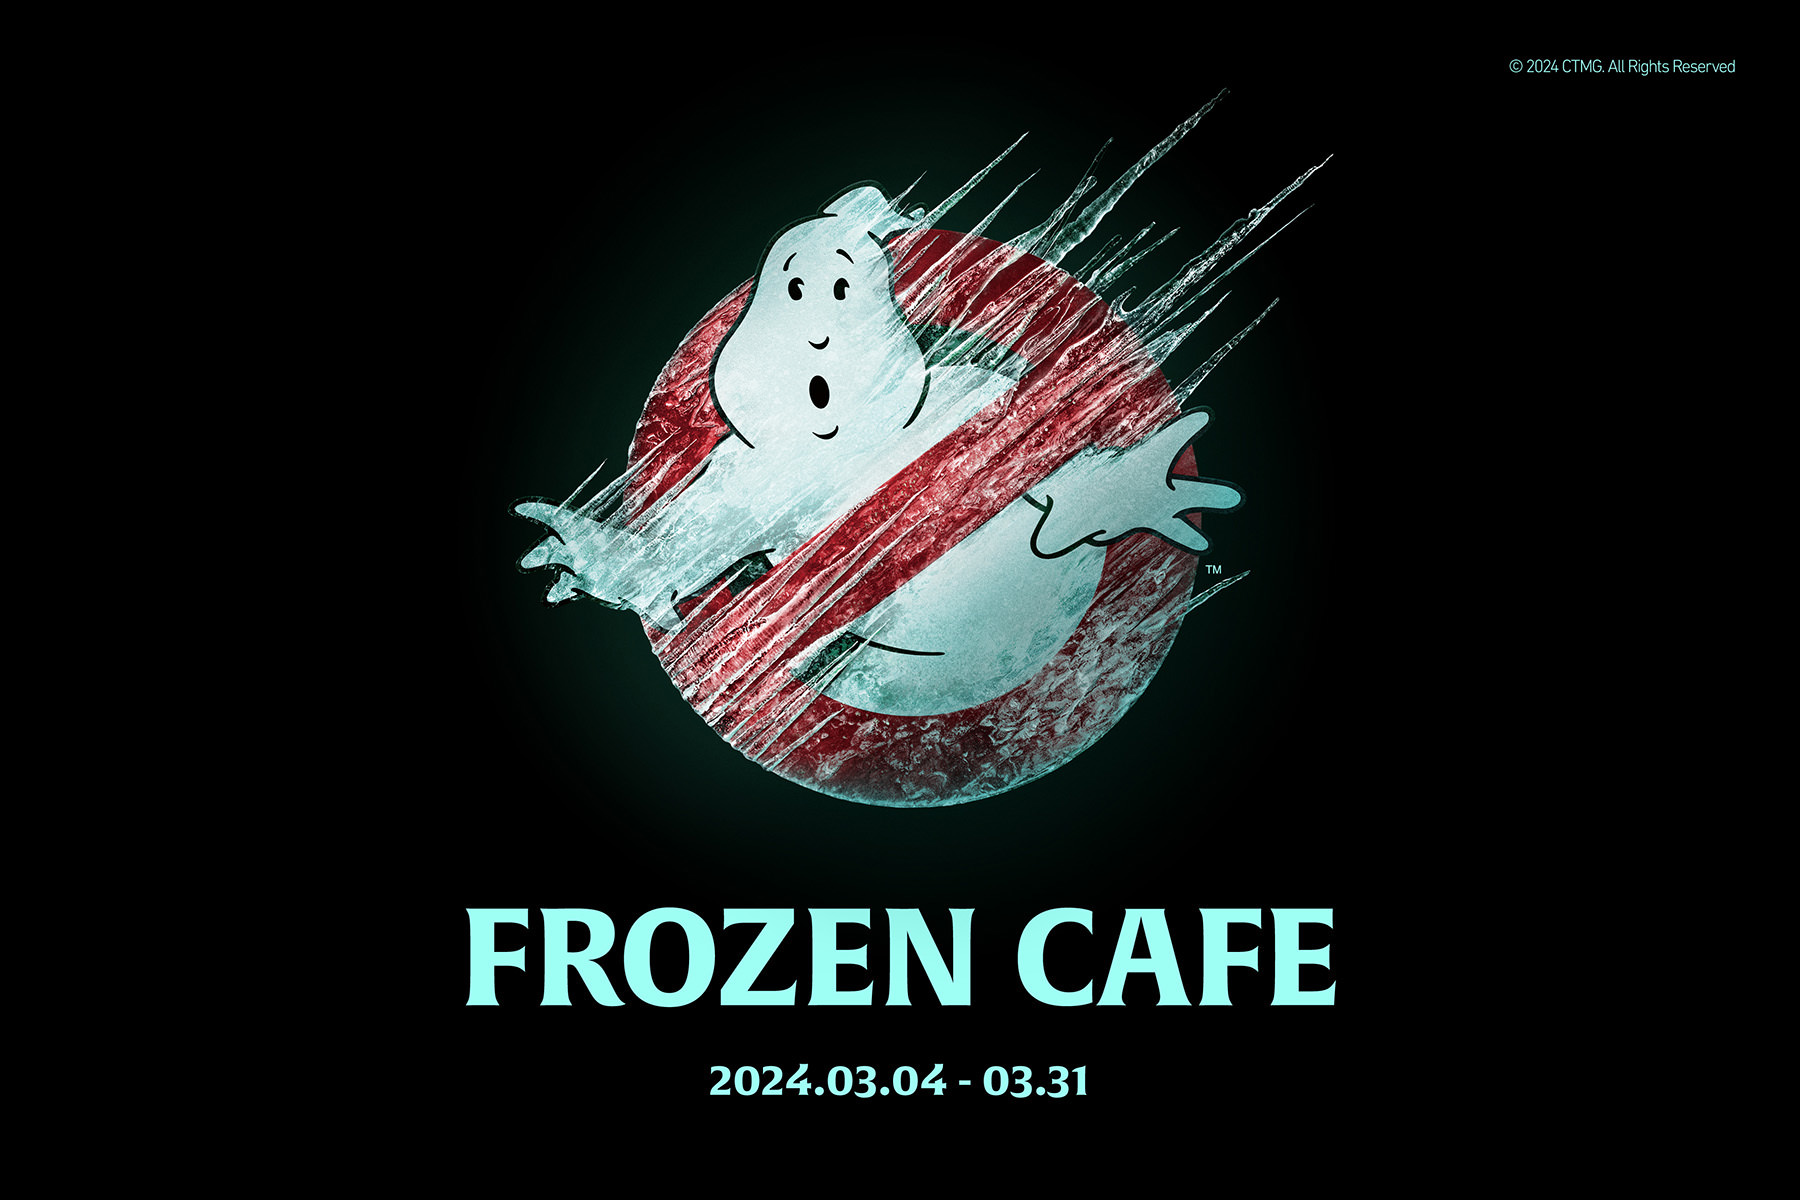 FROZEN CAFE Announcement Visual